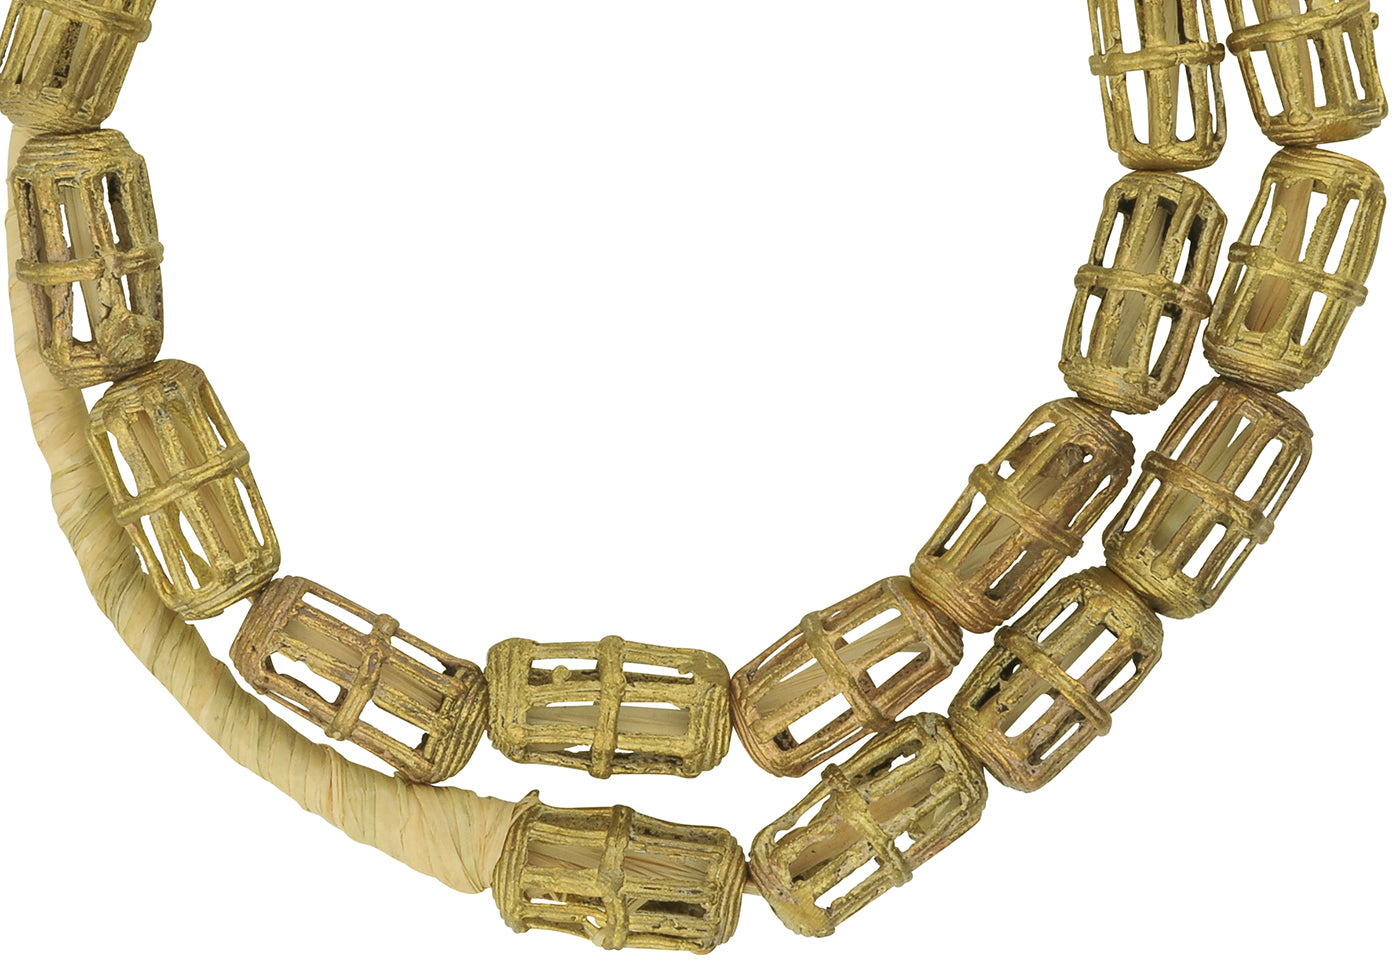 Perline in ottone fatte a mano Ghana Ashanti bronzo cera persa gioielli tribali commercio africano